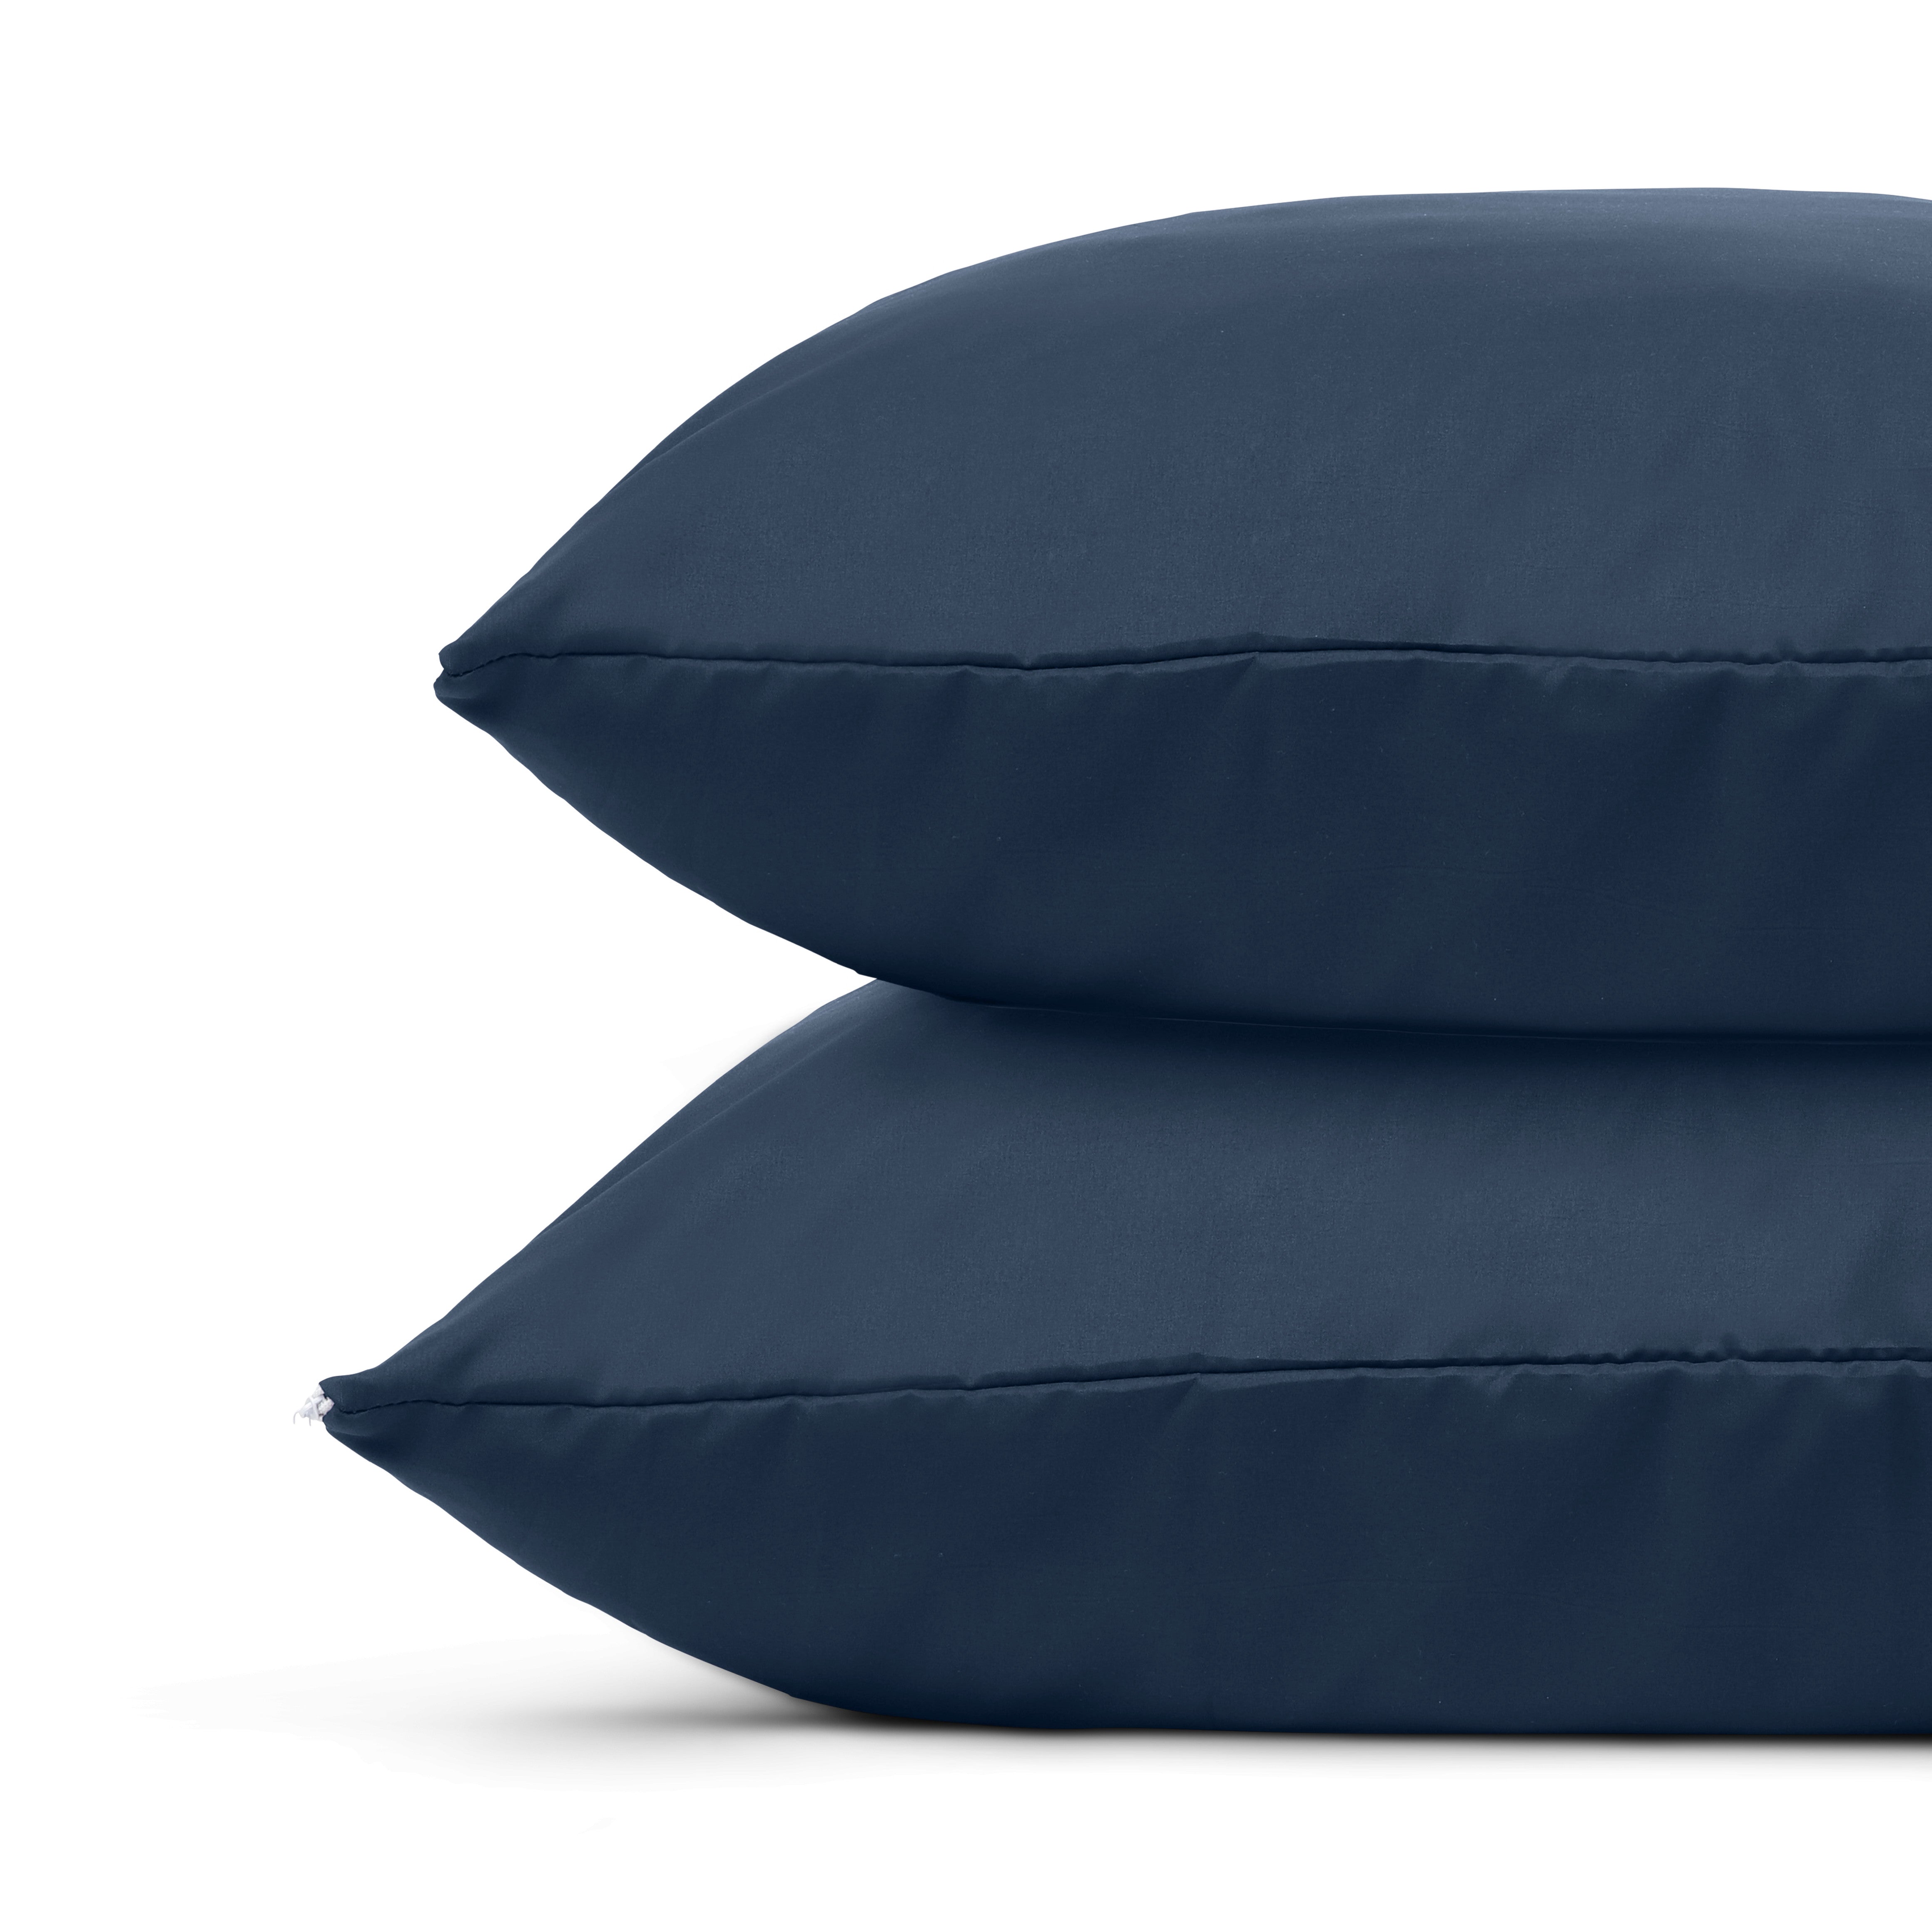 HappyDuvet | Dark blue pillowcase set 2 pieces - 60x70cm - 100% Microfibre